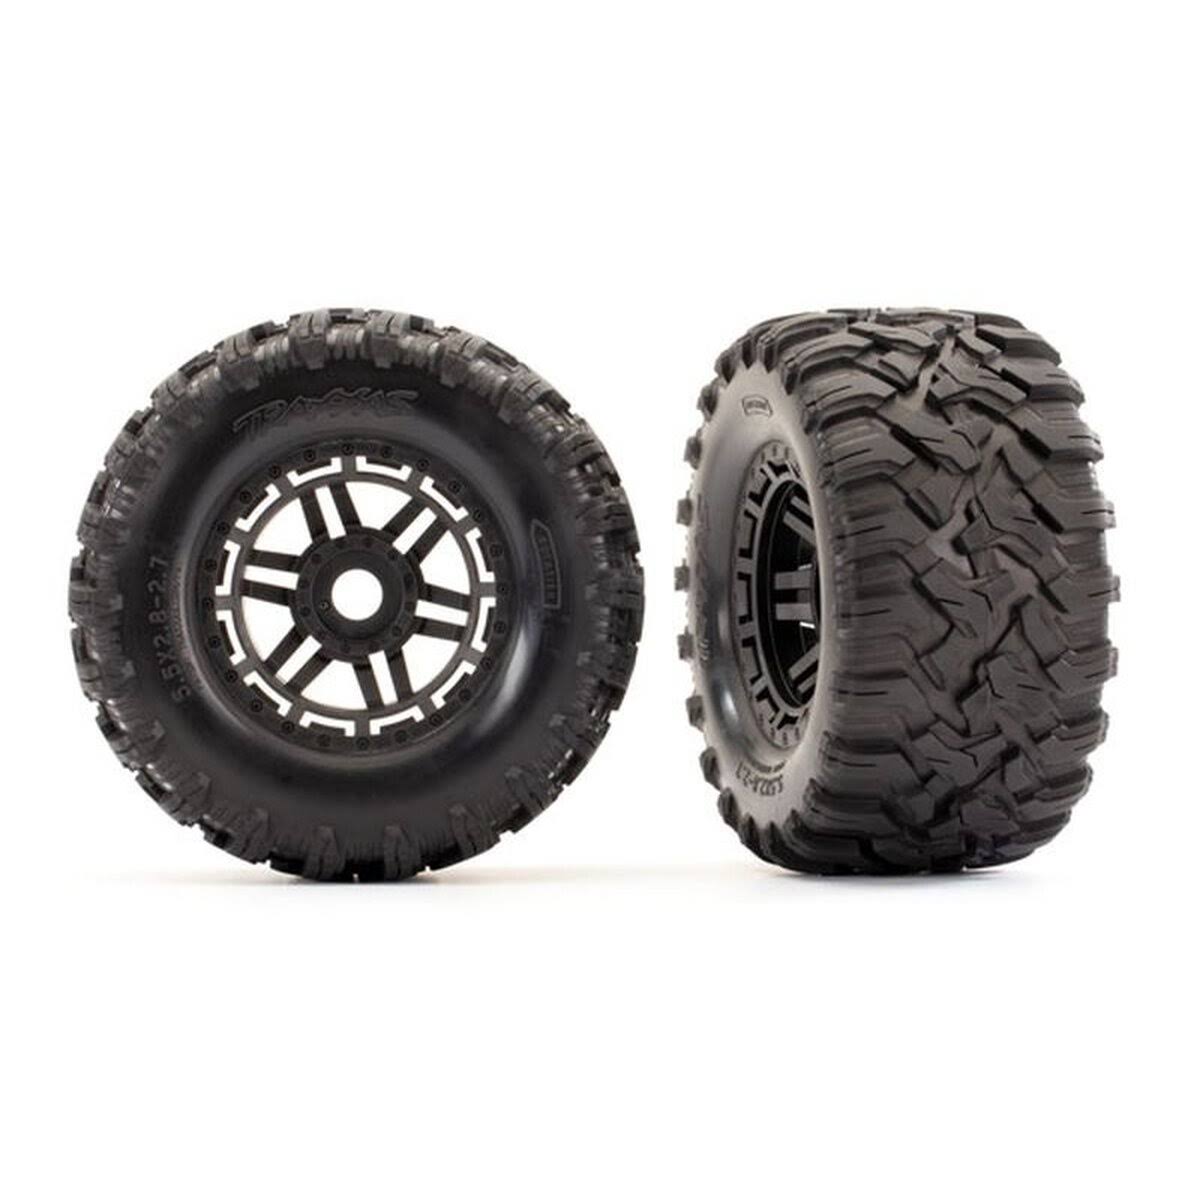 Traxxas 8972 - Black Wheels / Maxx All-Terrain Tires